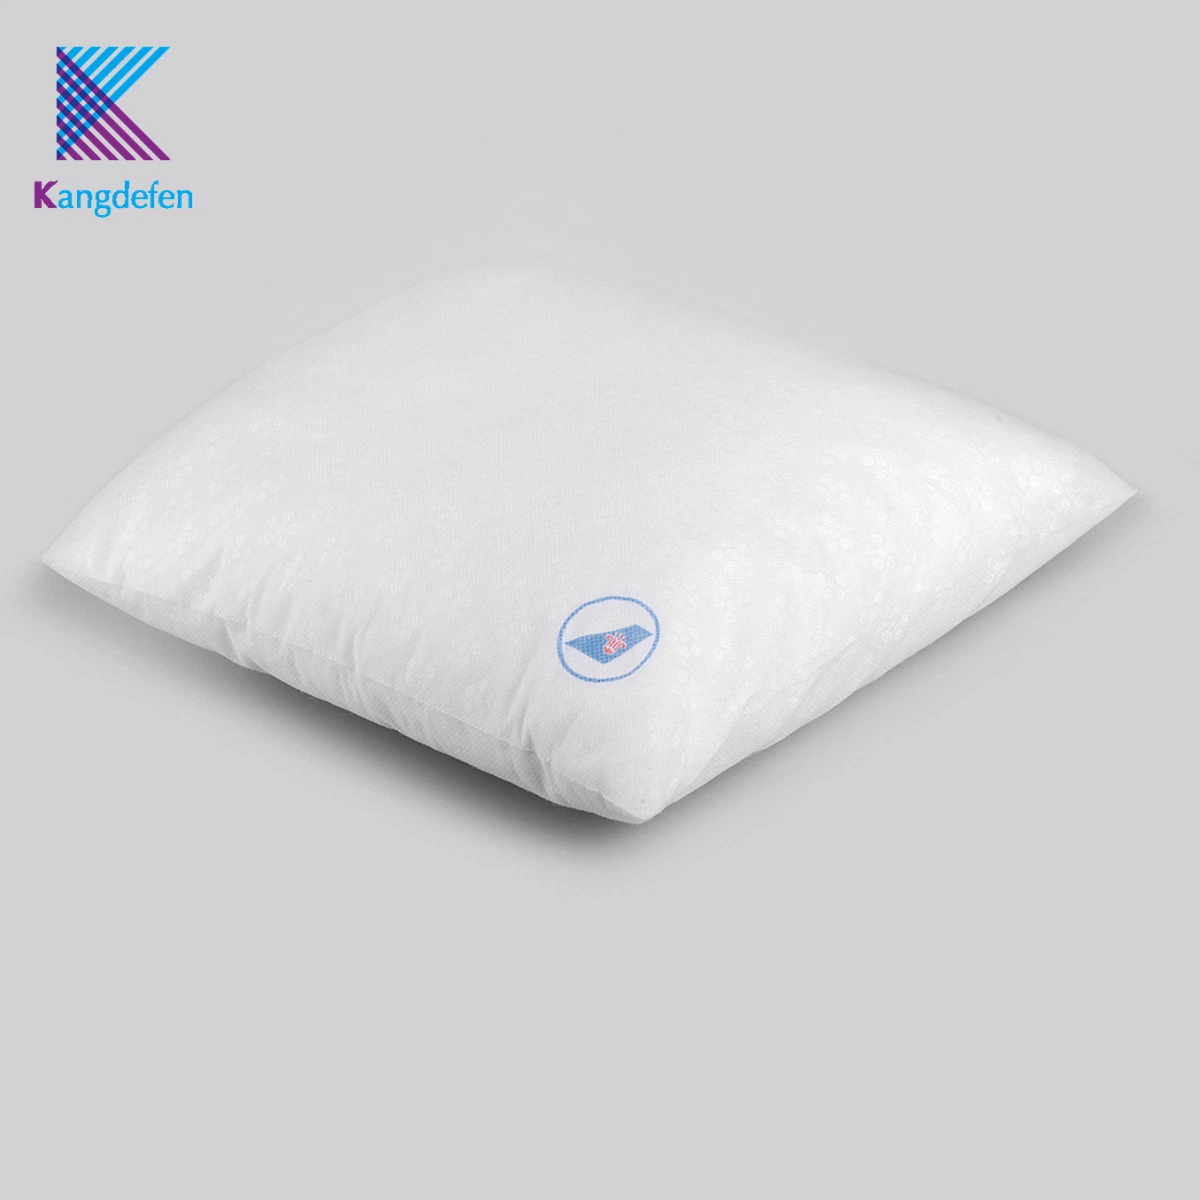 Startseite Textil Produkt Rückenkissen Polyester / Baumwolle Einweg-Kissen Mit hoher Qualität